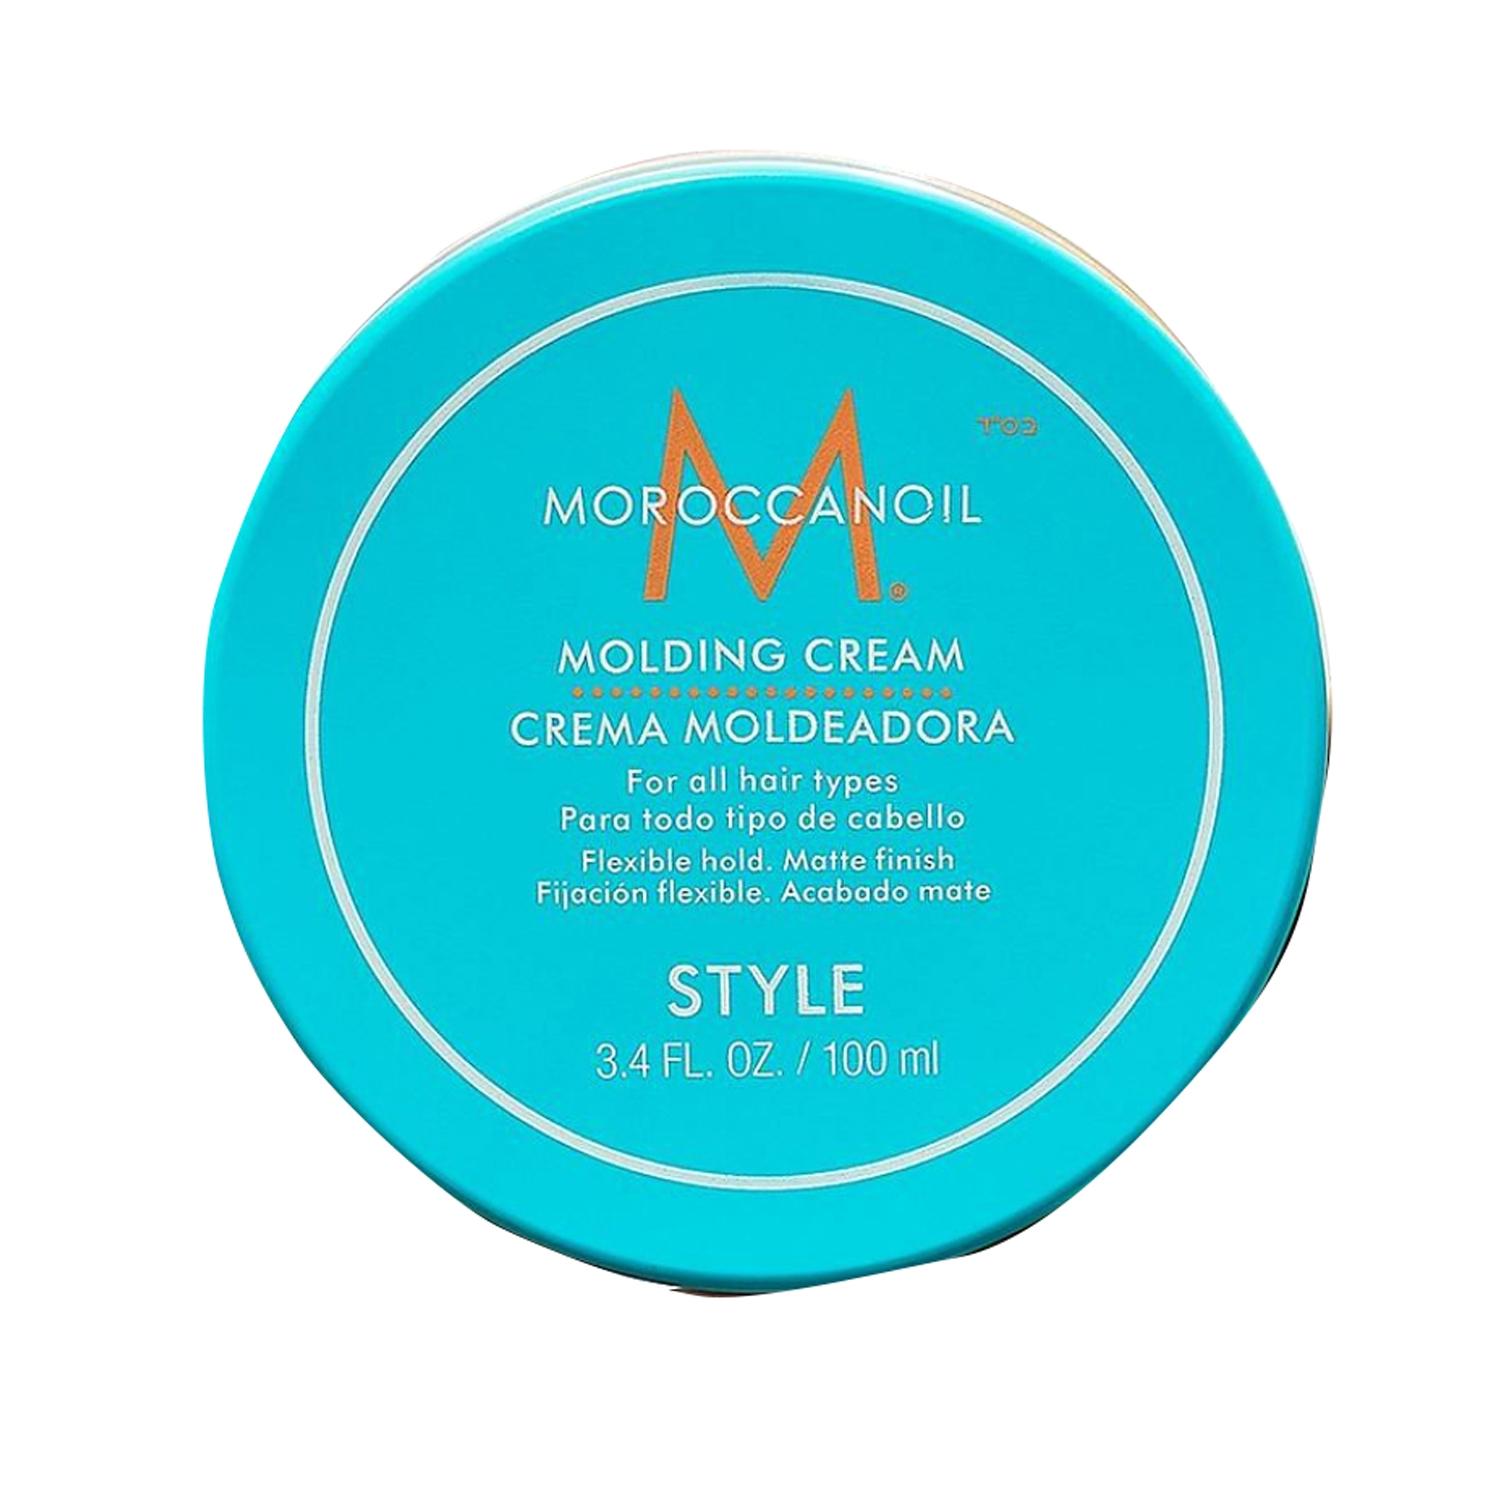 moroccanoil molding cream (100ml)